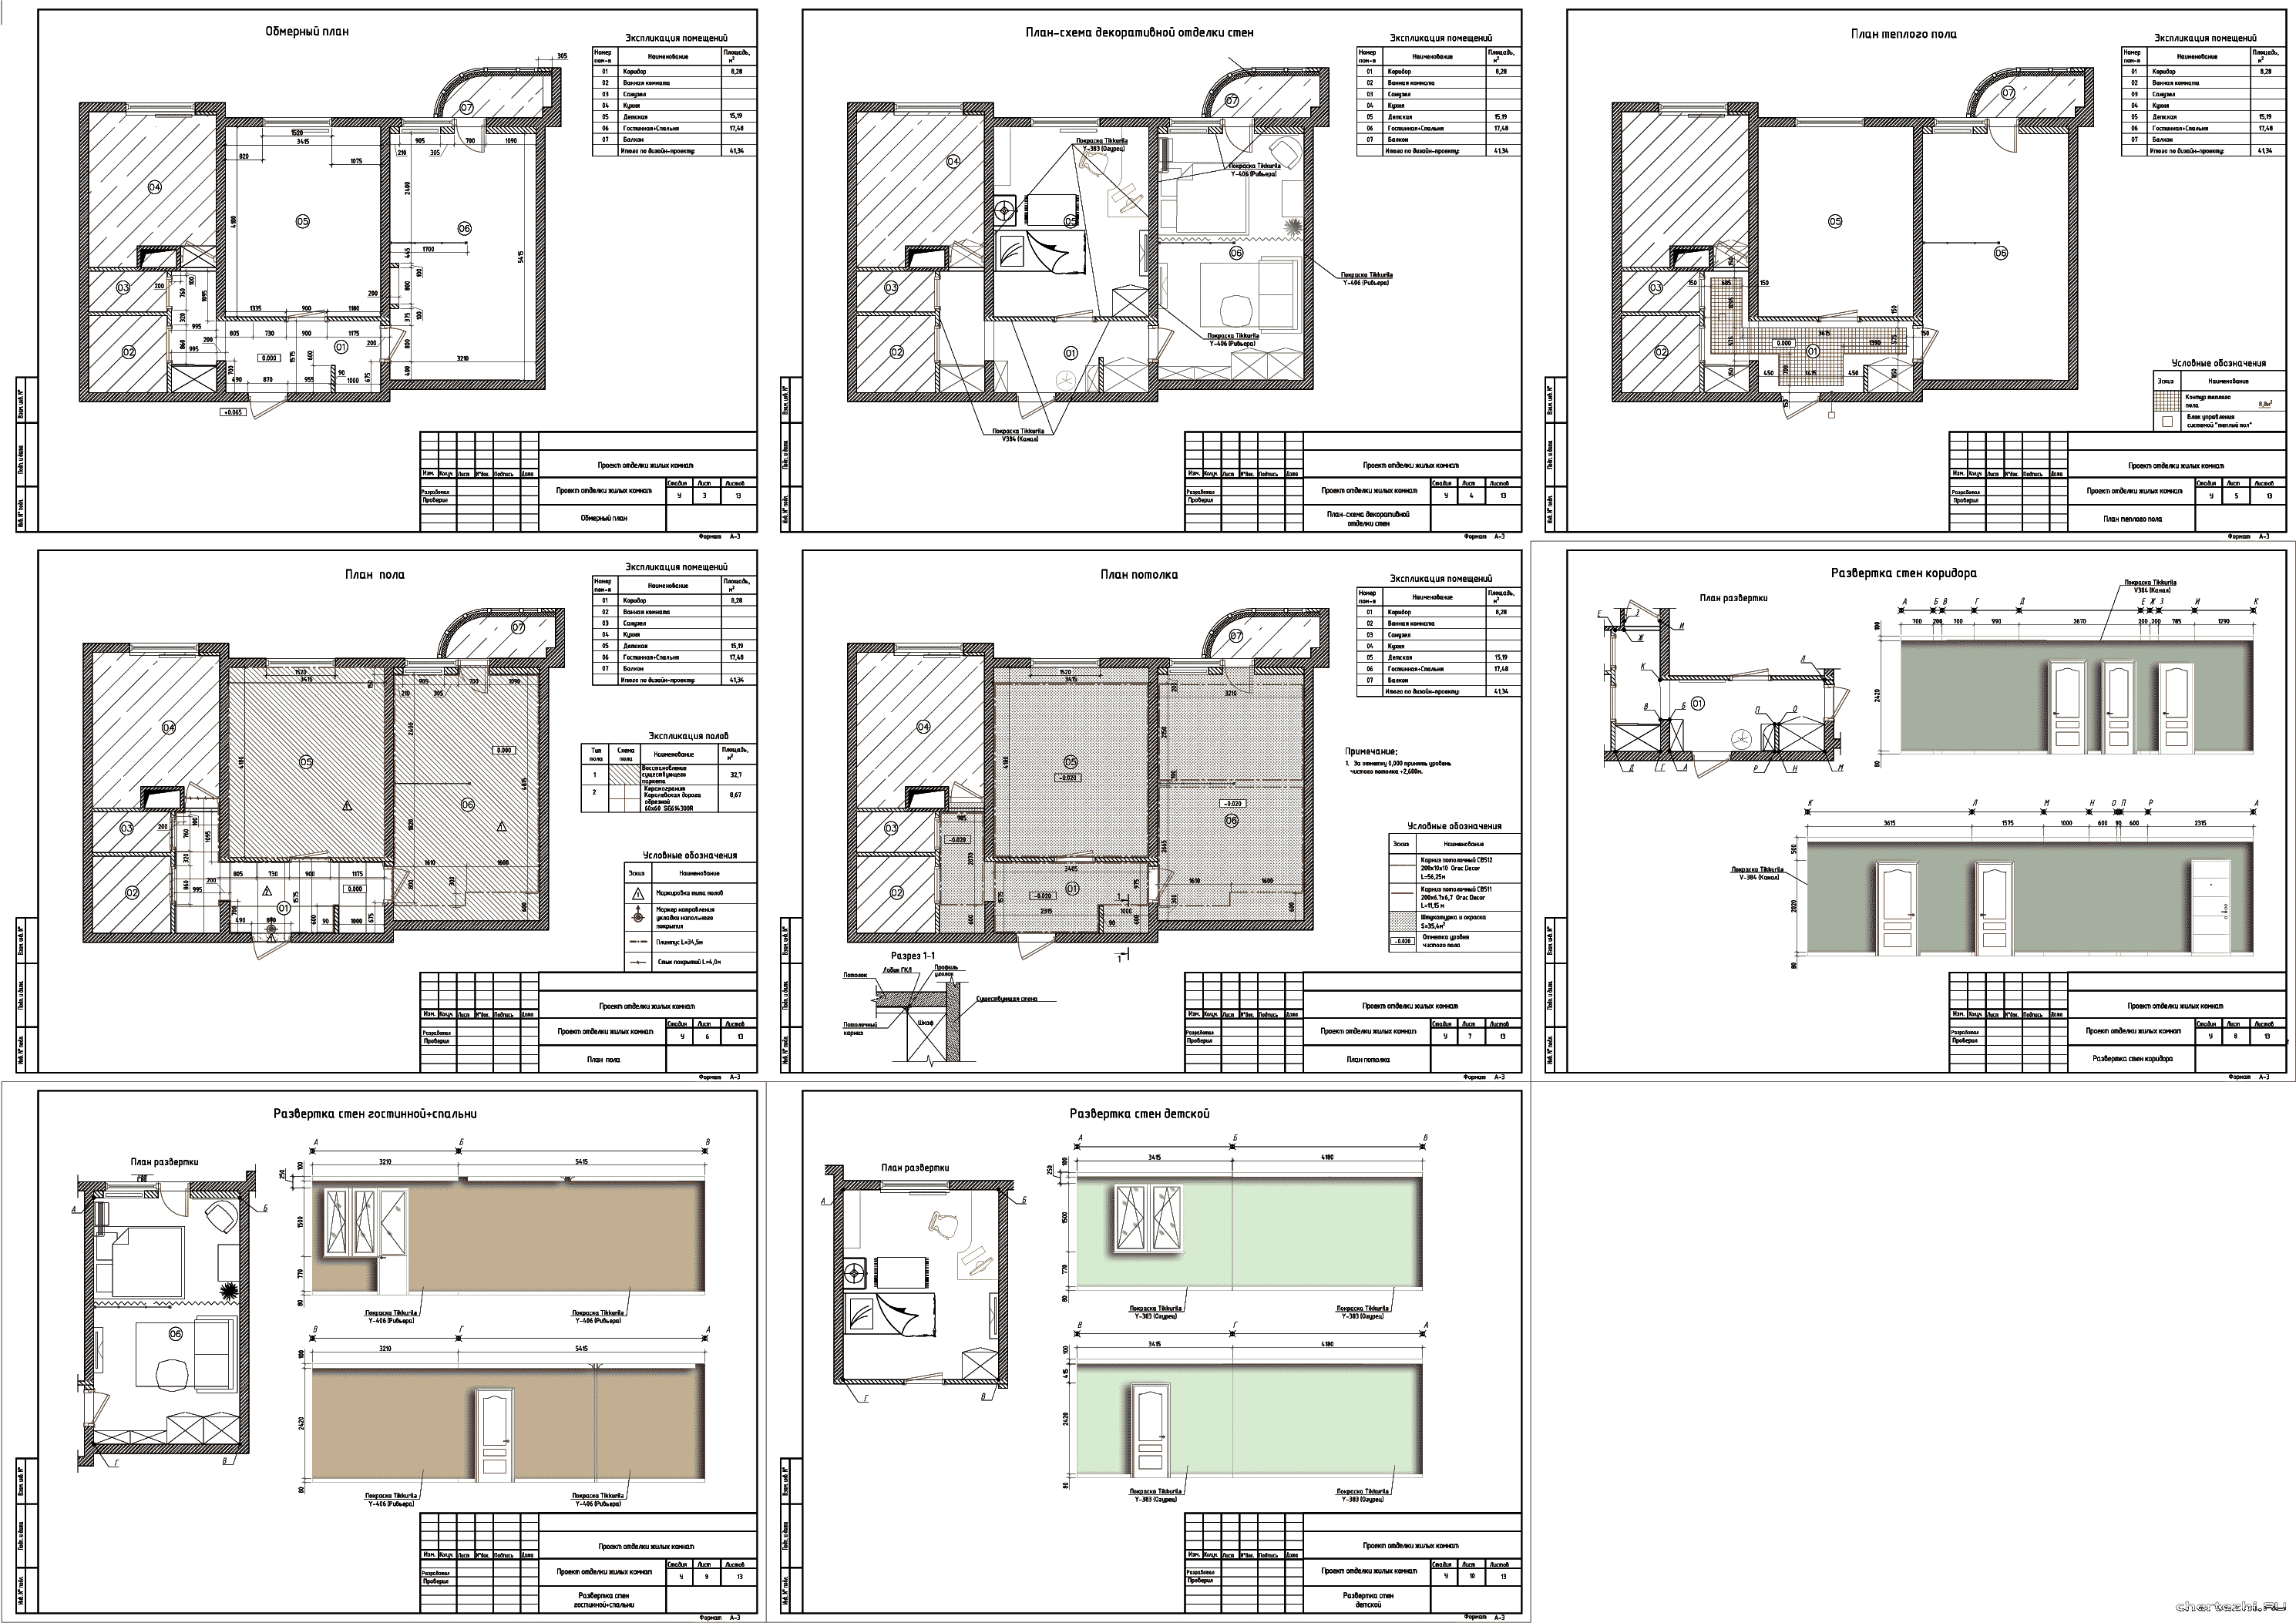 Курсовой проект - Проект отделки жилых комнат в 2-ух комнатной квартире 41,34 м2